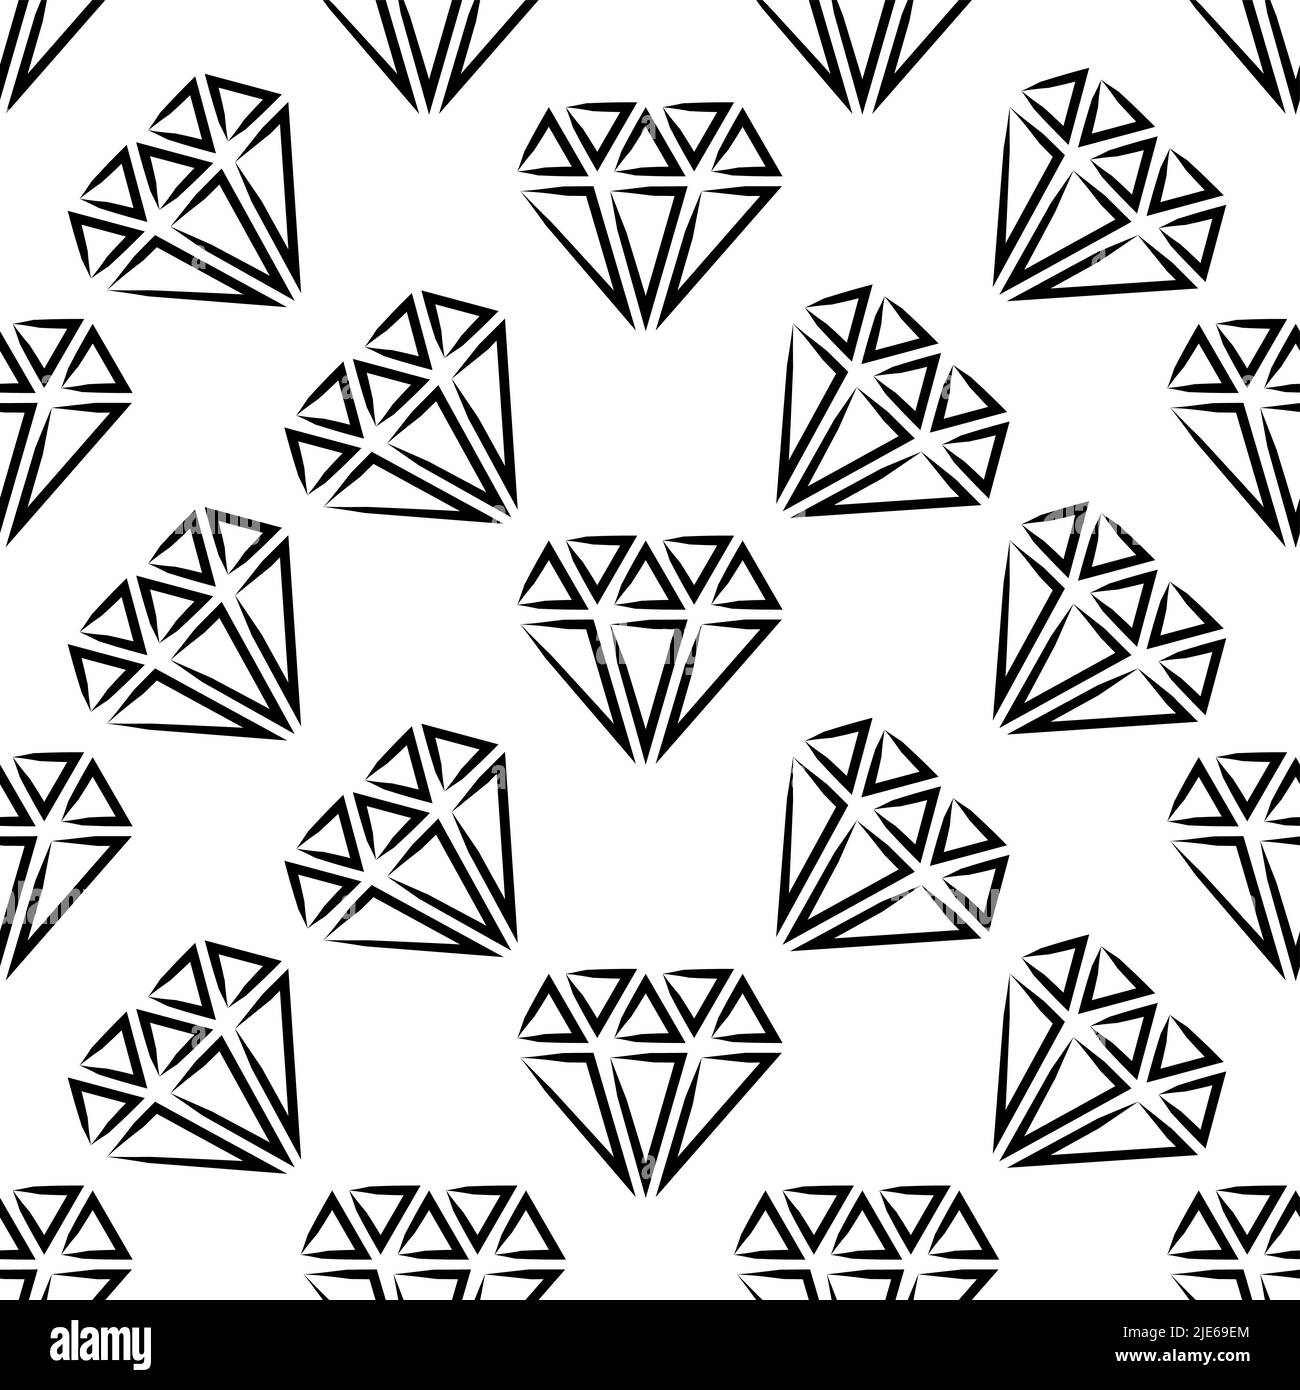 Icona Diamante, disegno grafico del disegno senza giunture del disegno di taglio del diamante Illustrazione Vettoriale